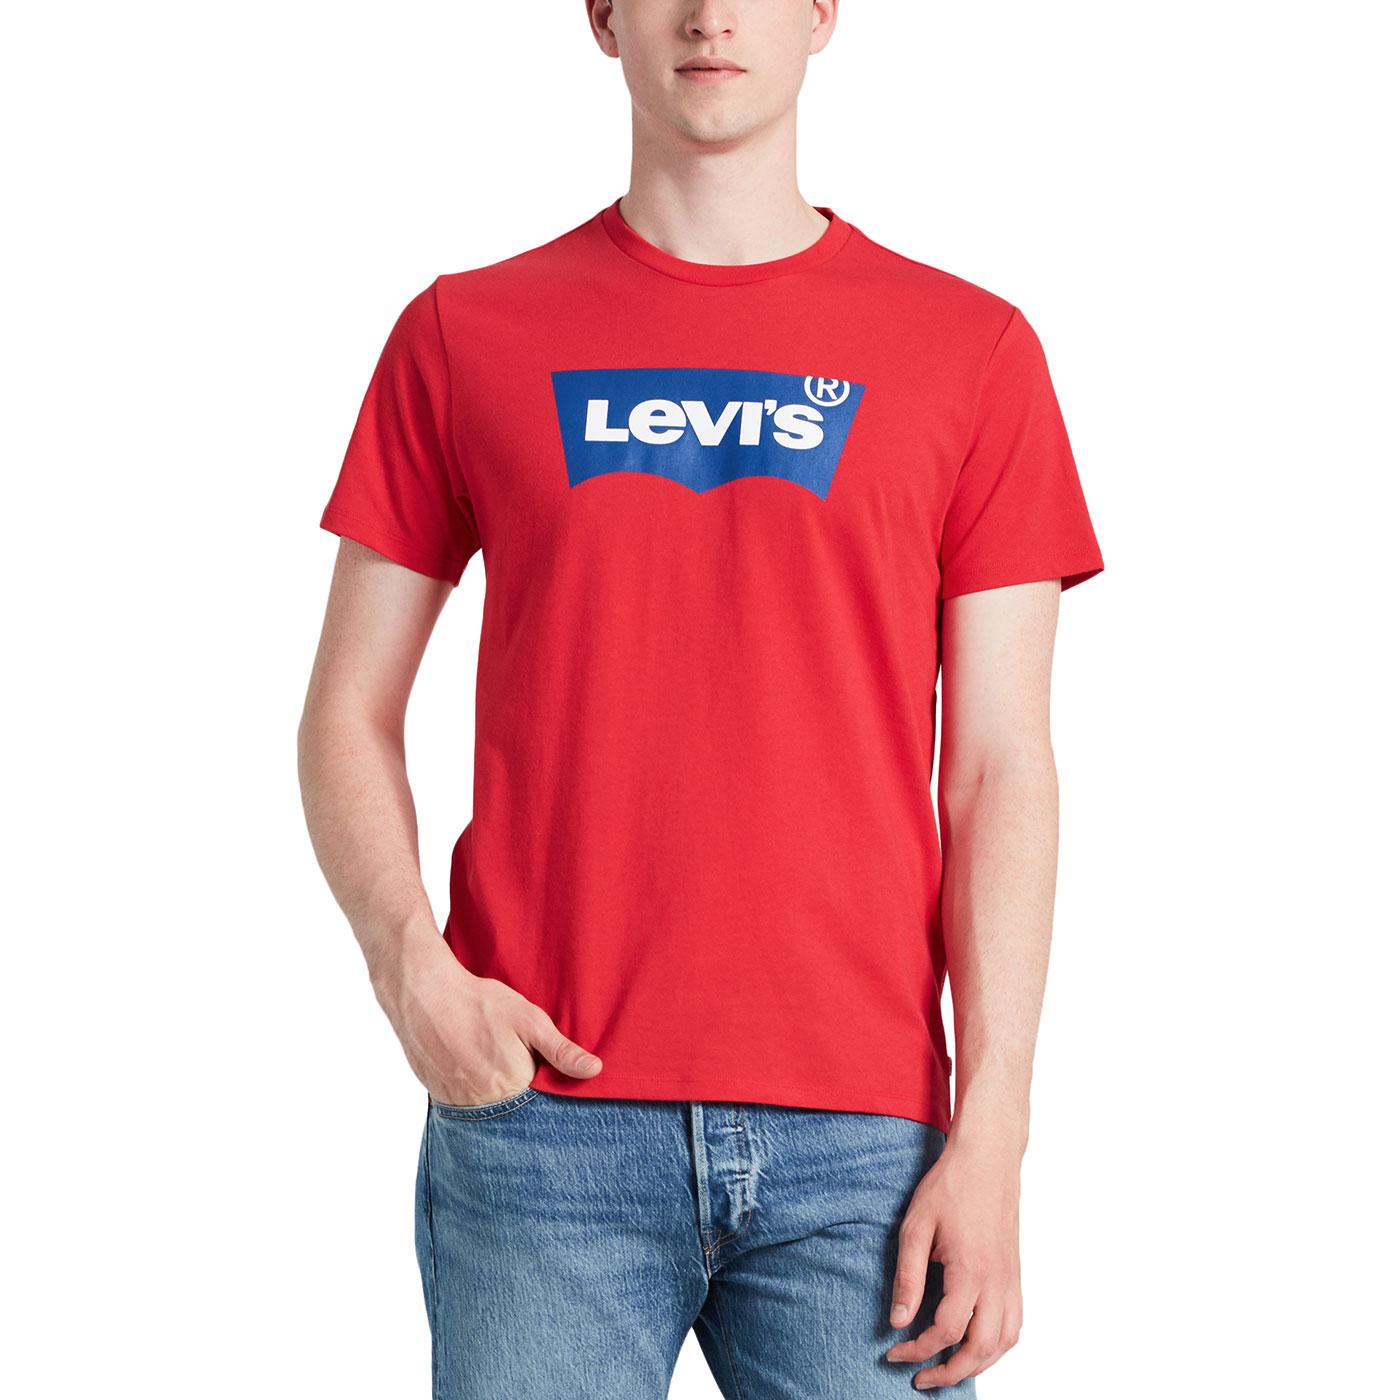 levis t shirt men